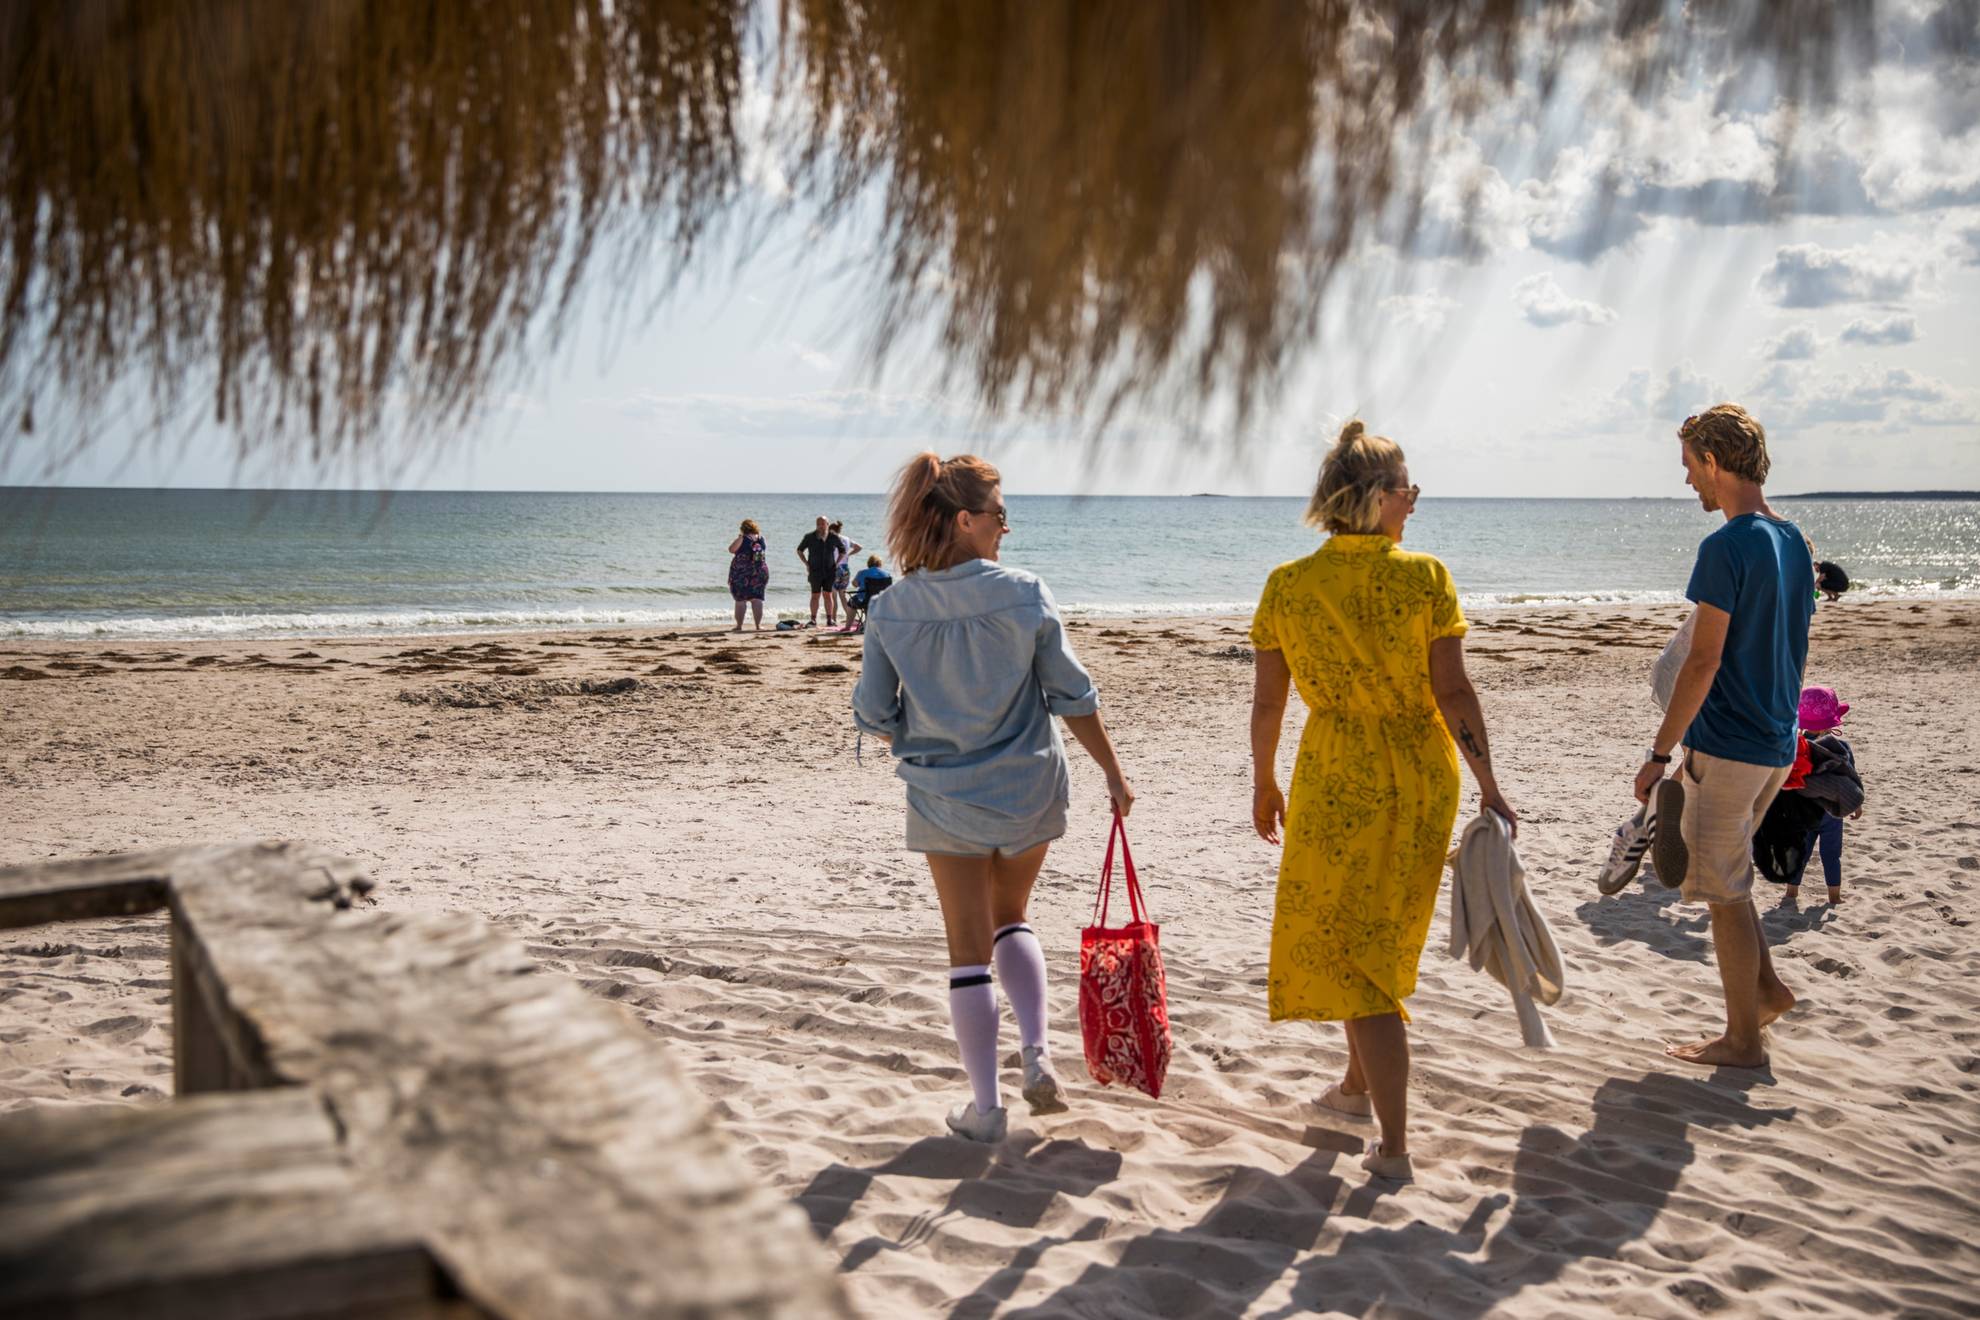 Twee vrouwen en een man op weg naar het strand. Je ziet de zee en enkele mensen op het strand op de achtergrond.